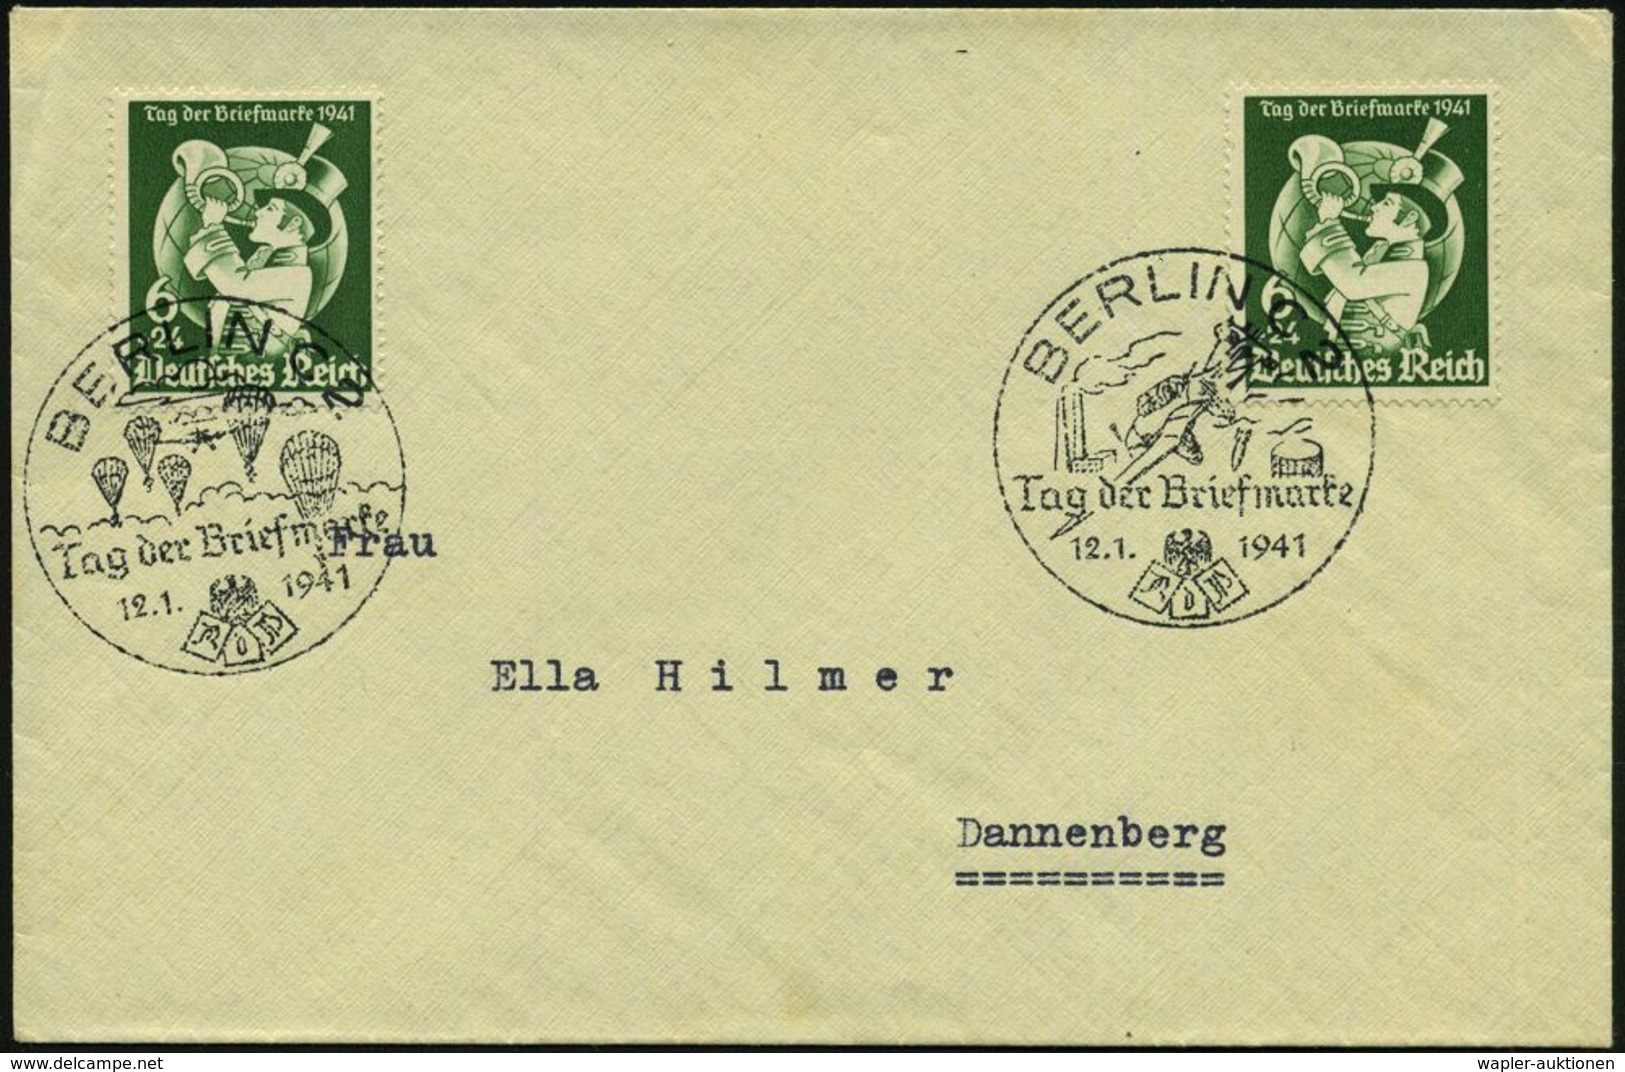 MILITÄRFLUGWESEN / MILITÄRFLUGZEUGE : BERLIN C 2/ Tag Der Briefmarke 1941 (12.1.) 2 Verschiedene SSt = Fallschirmjäger B - Aerei